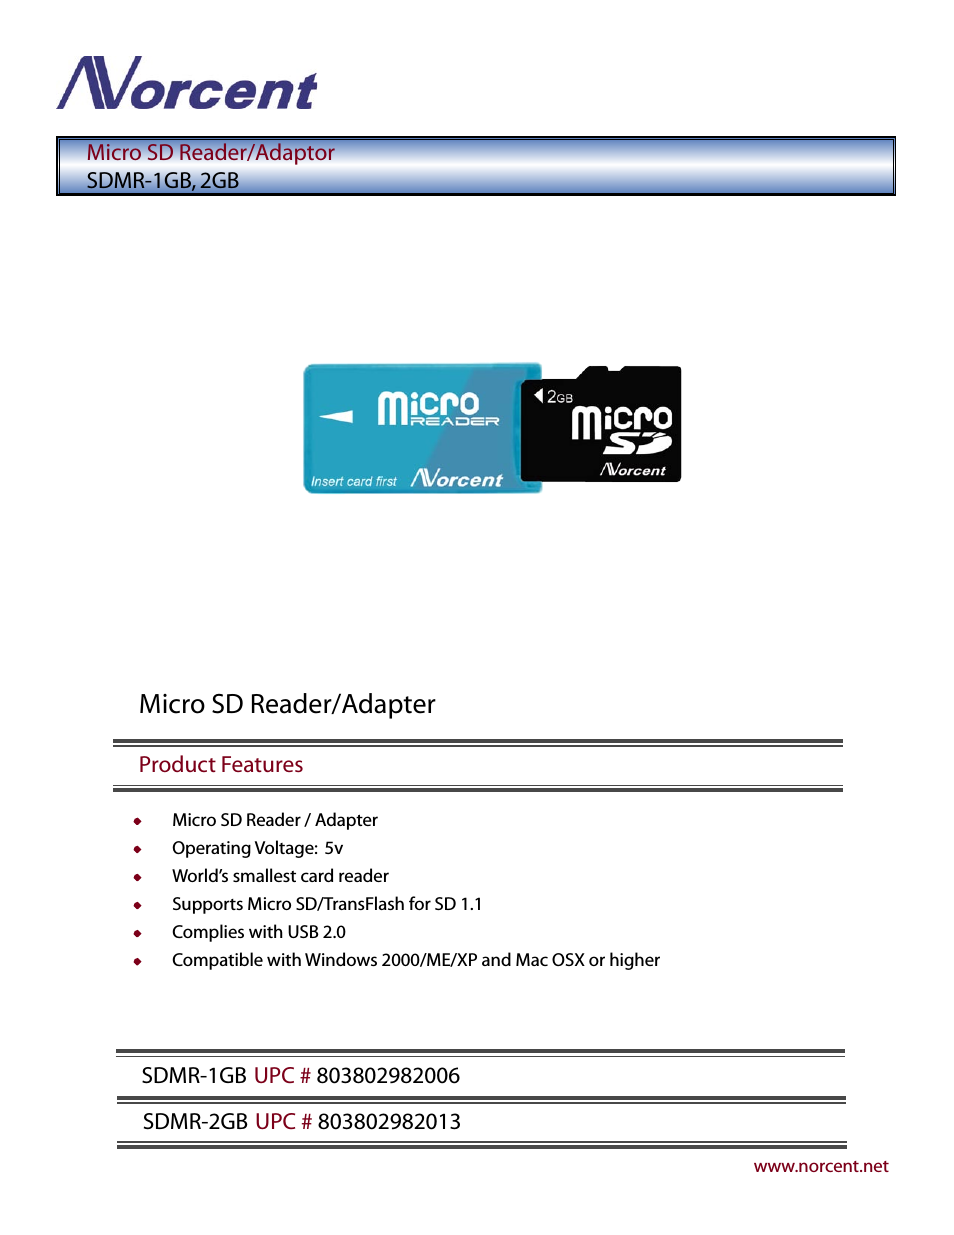 Micro SD Reader/Adaptor SDMR-1GB